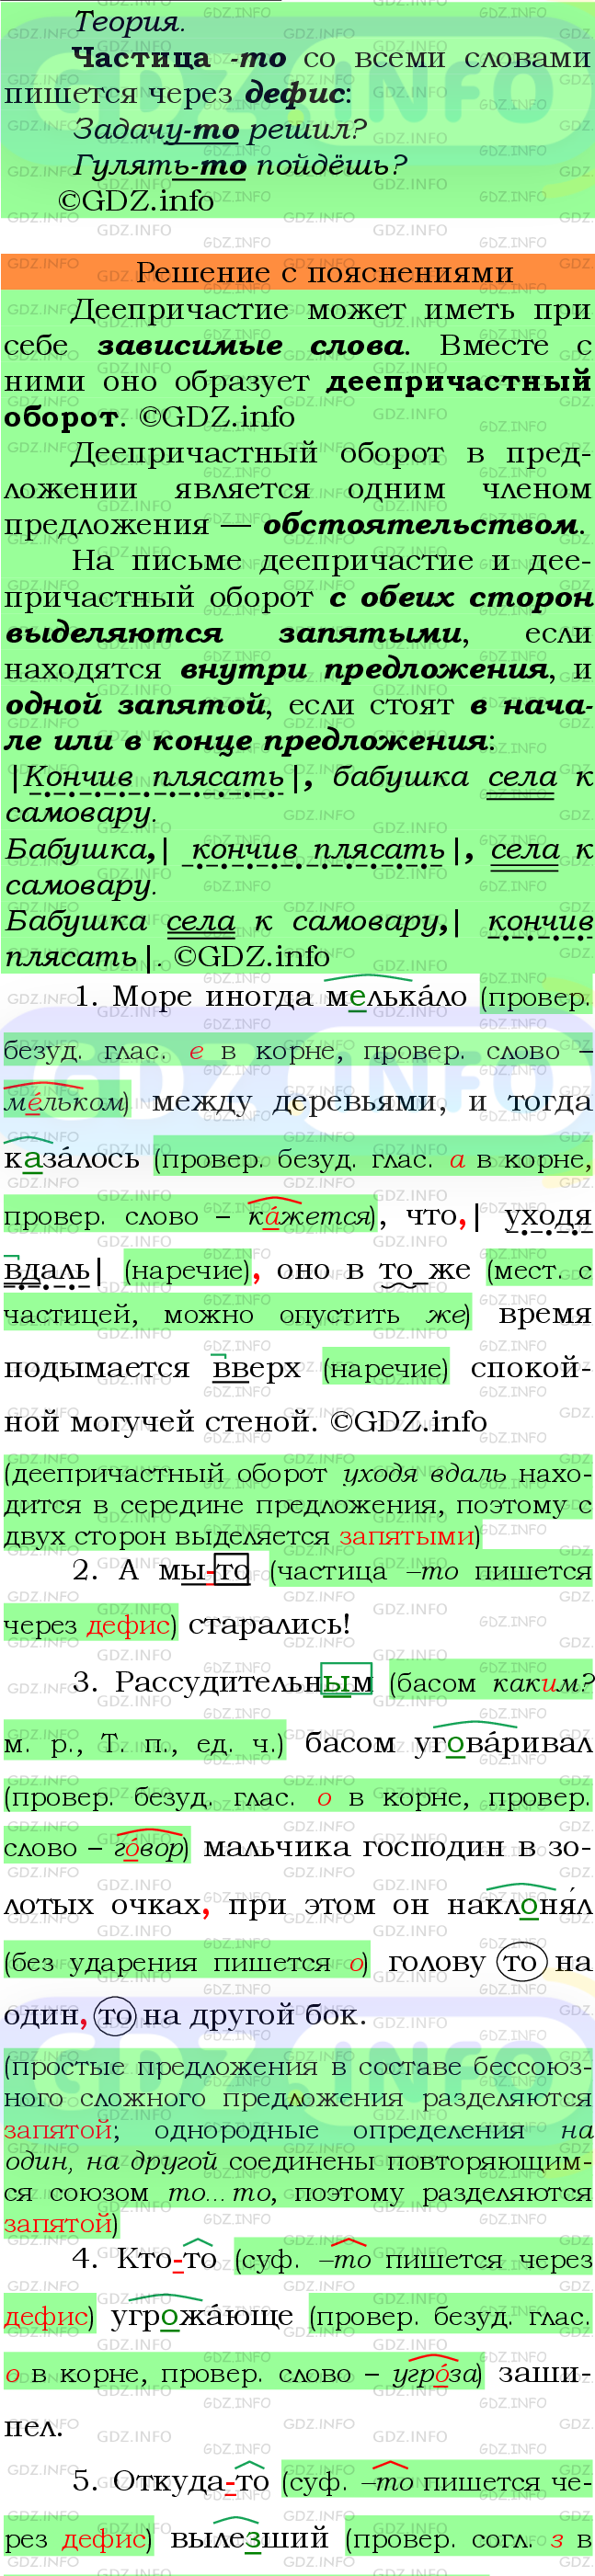 Фото подробного решения: Номер №517 из ГДЗ по Русскому языку 7 класс: Ладыженская Т.А.